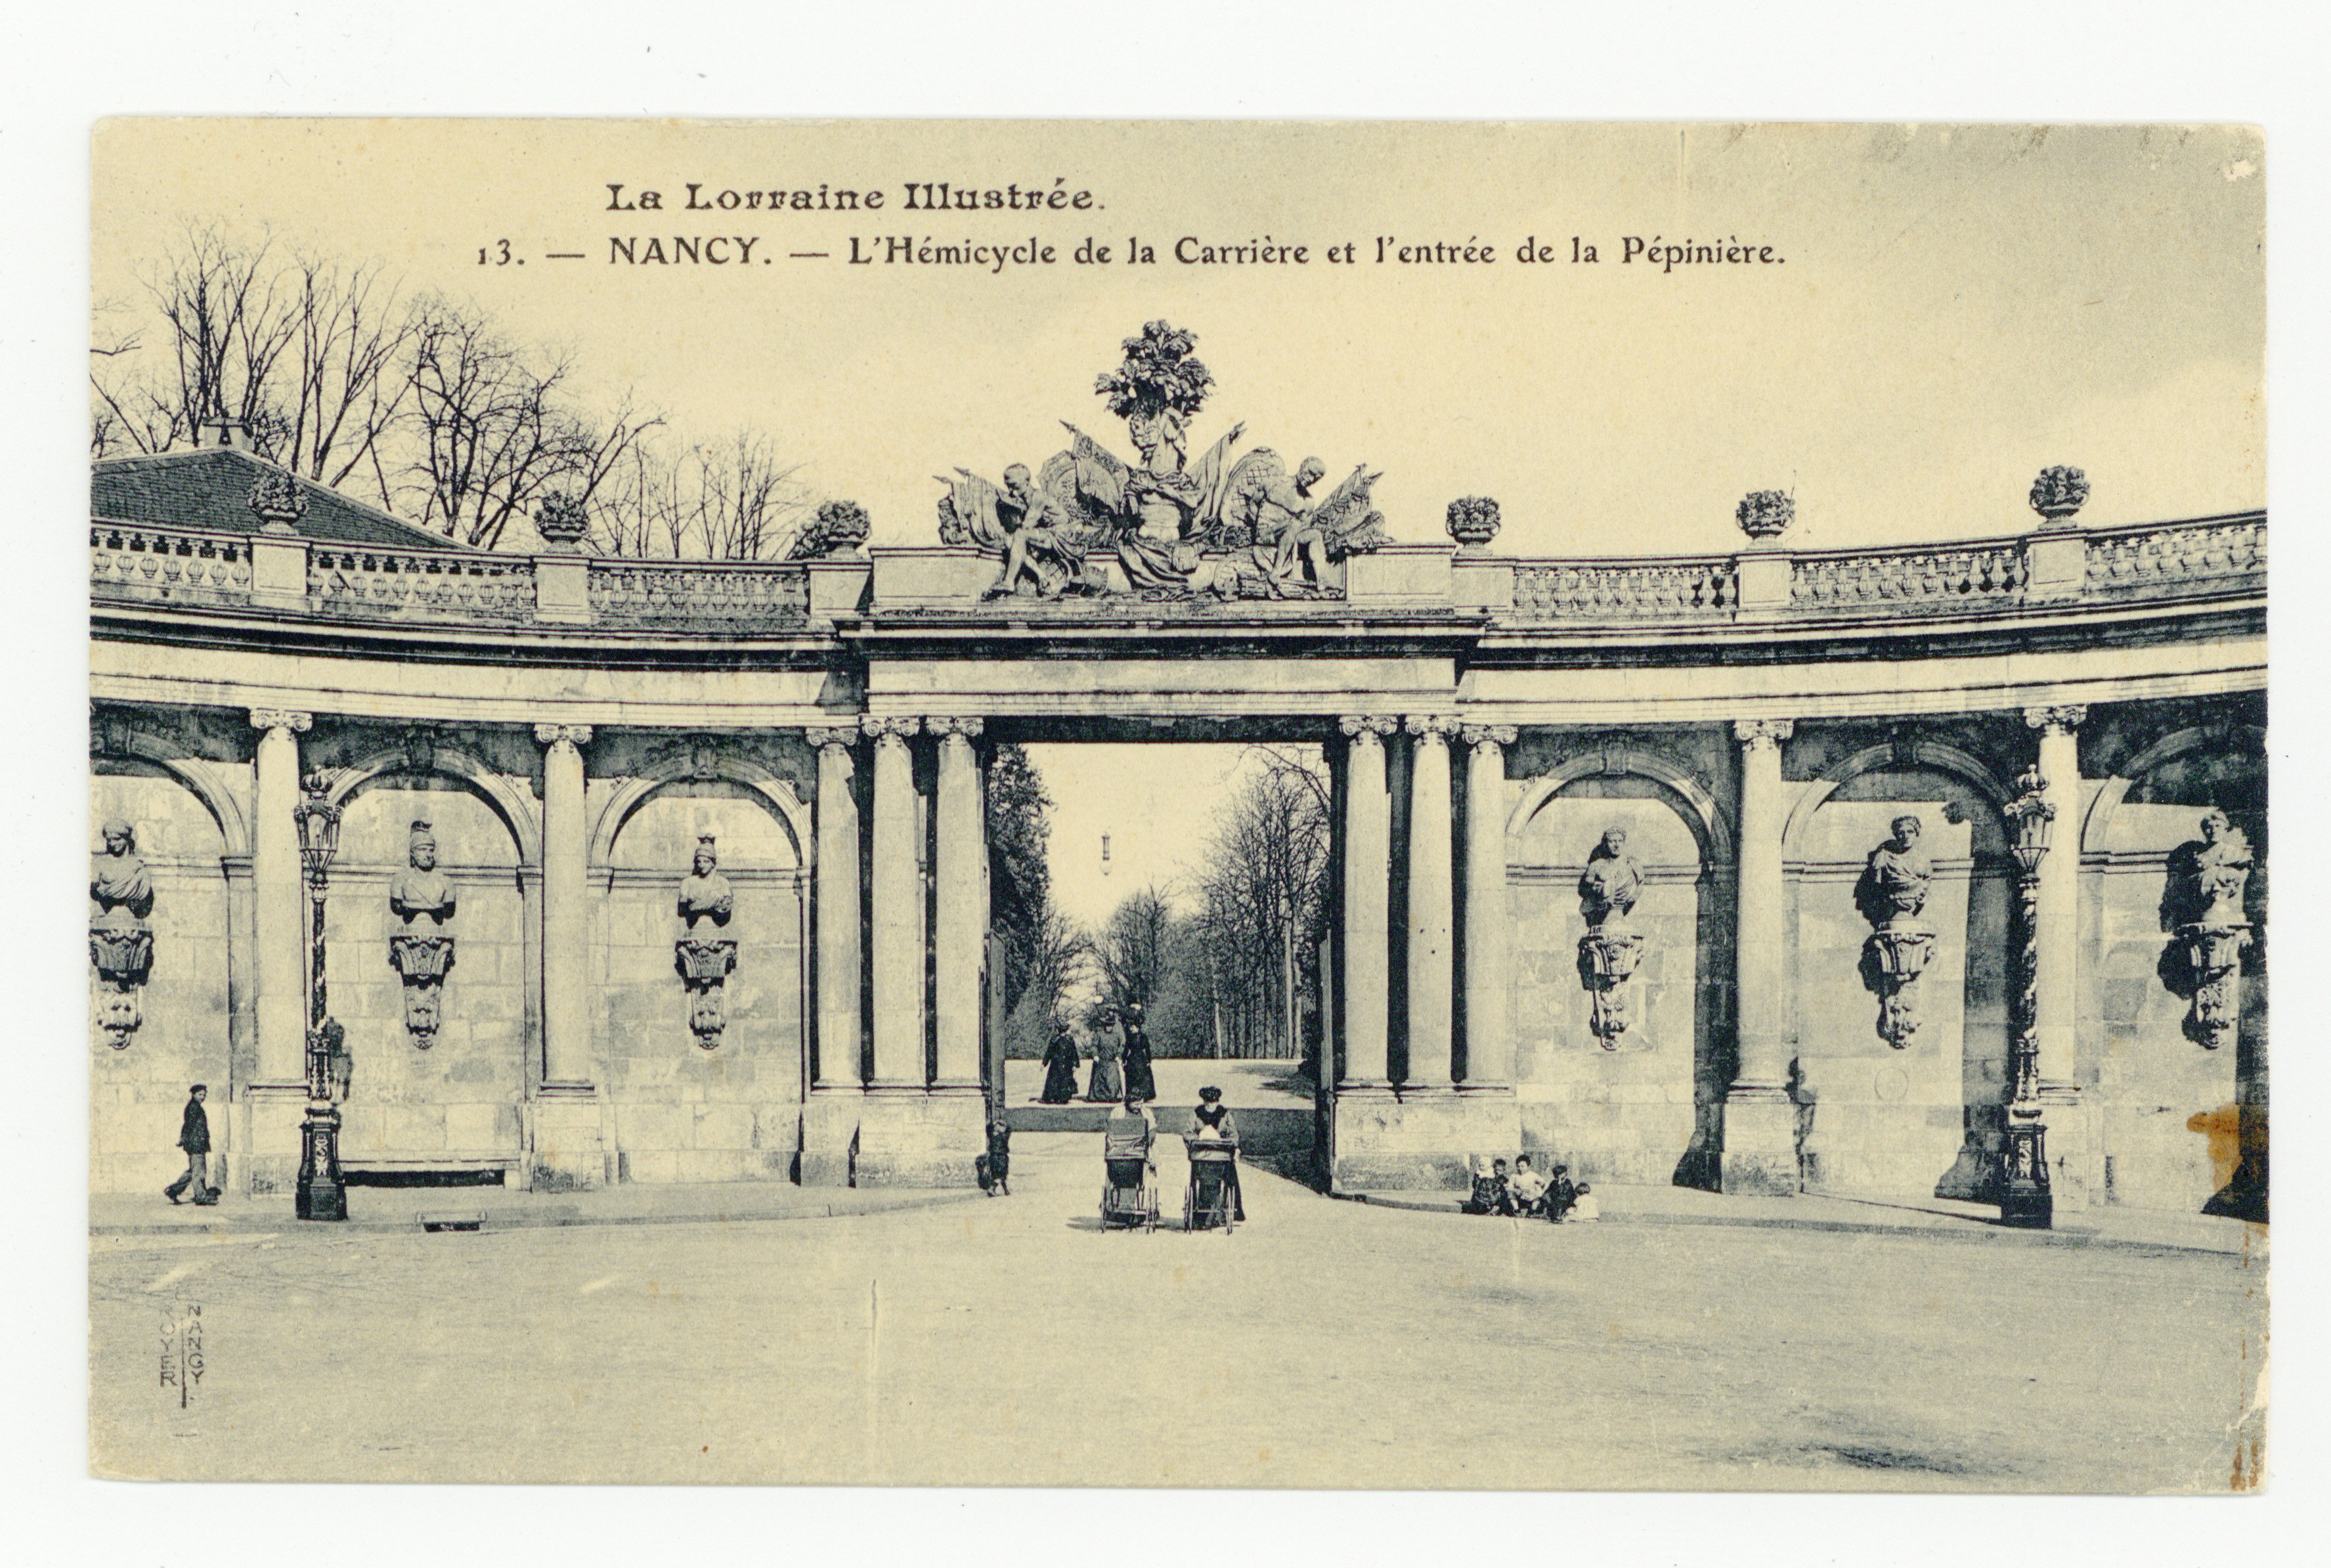 Contenu du Nancy : l'hémicycle de la Carrière et l'entrée de la Pépinière, la Lorraine illustrée